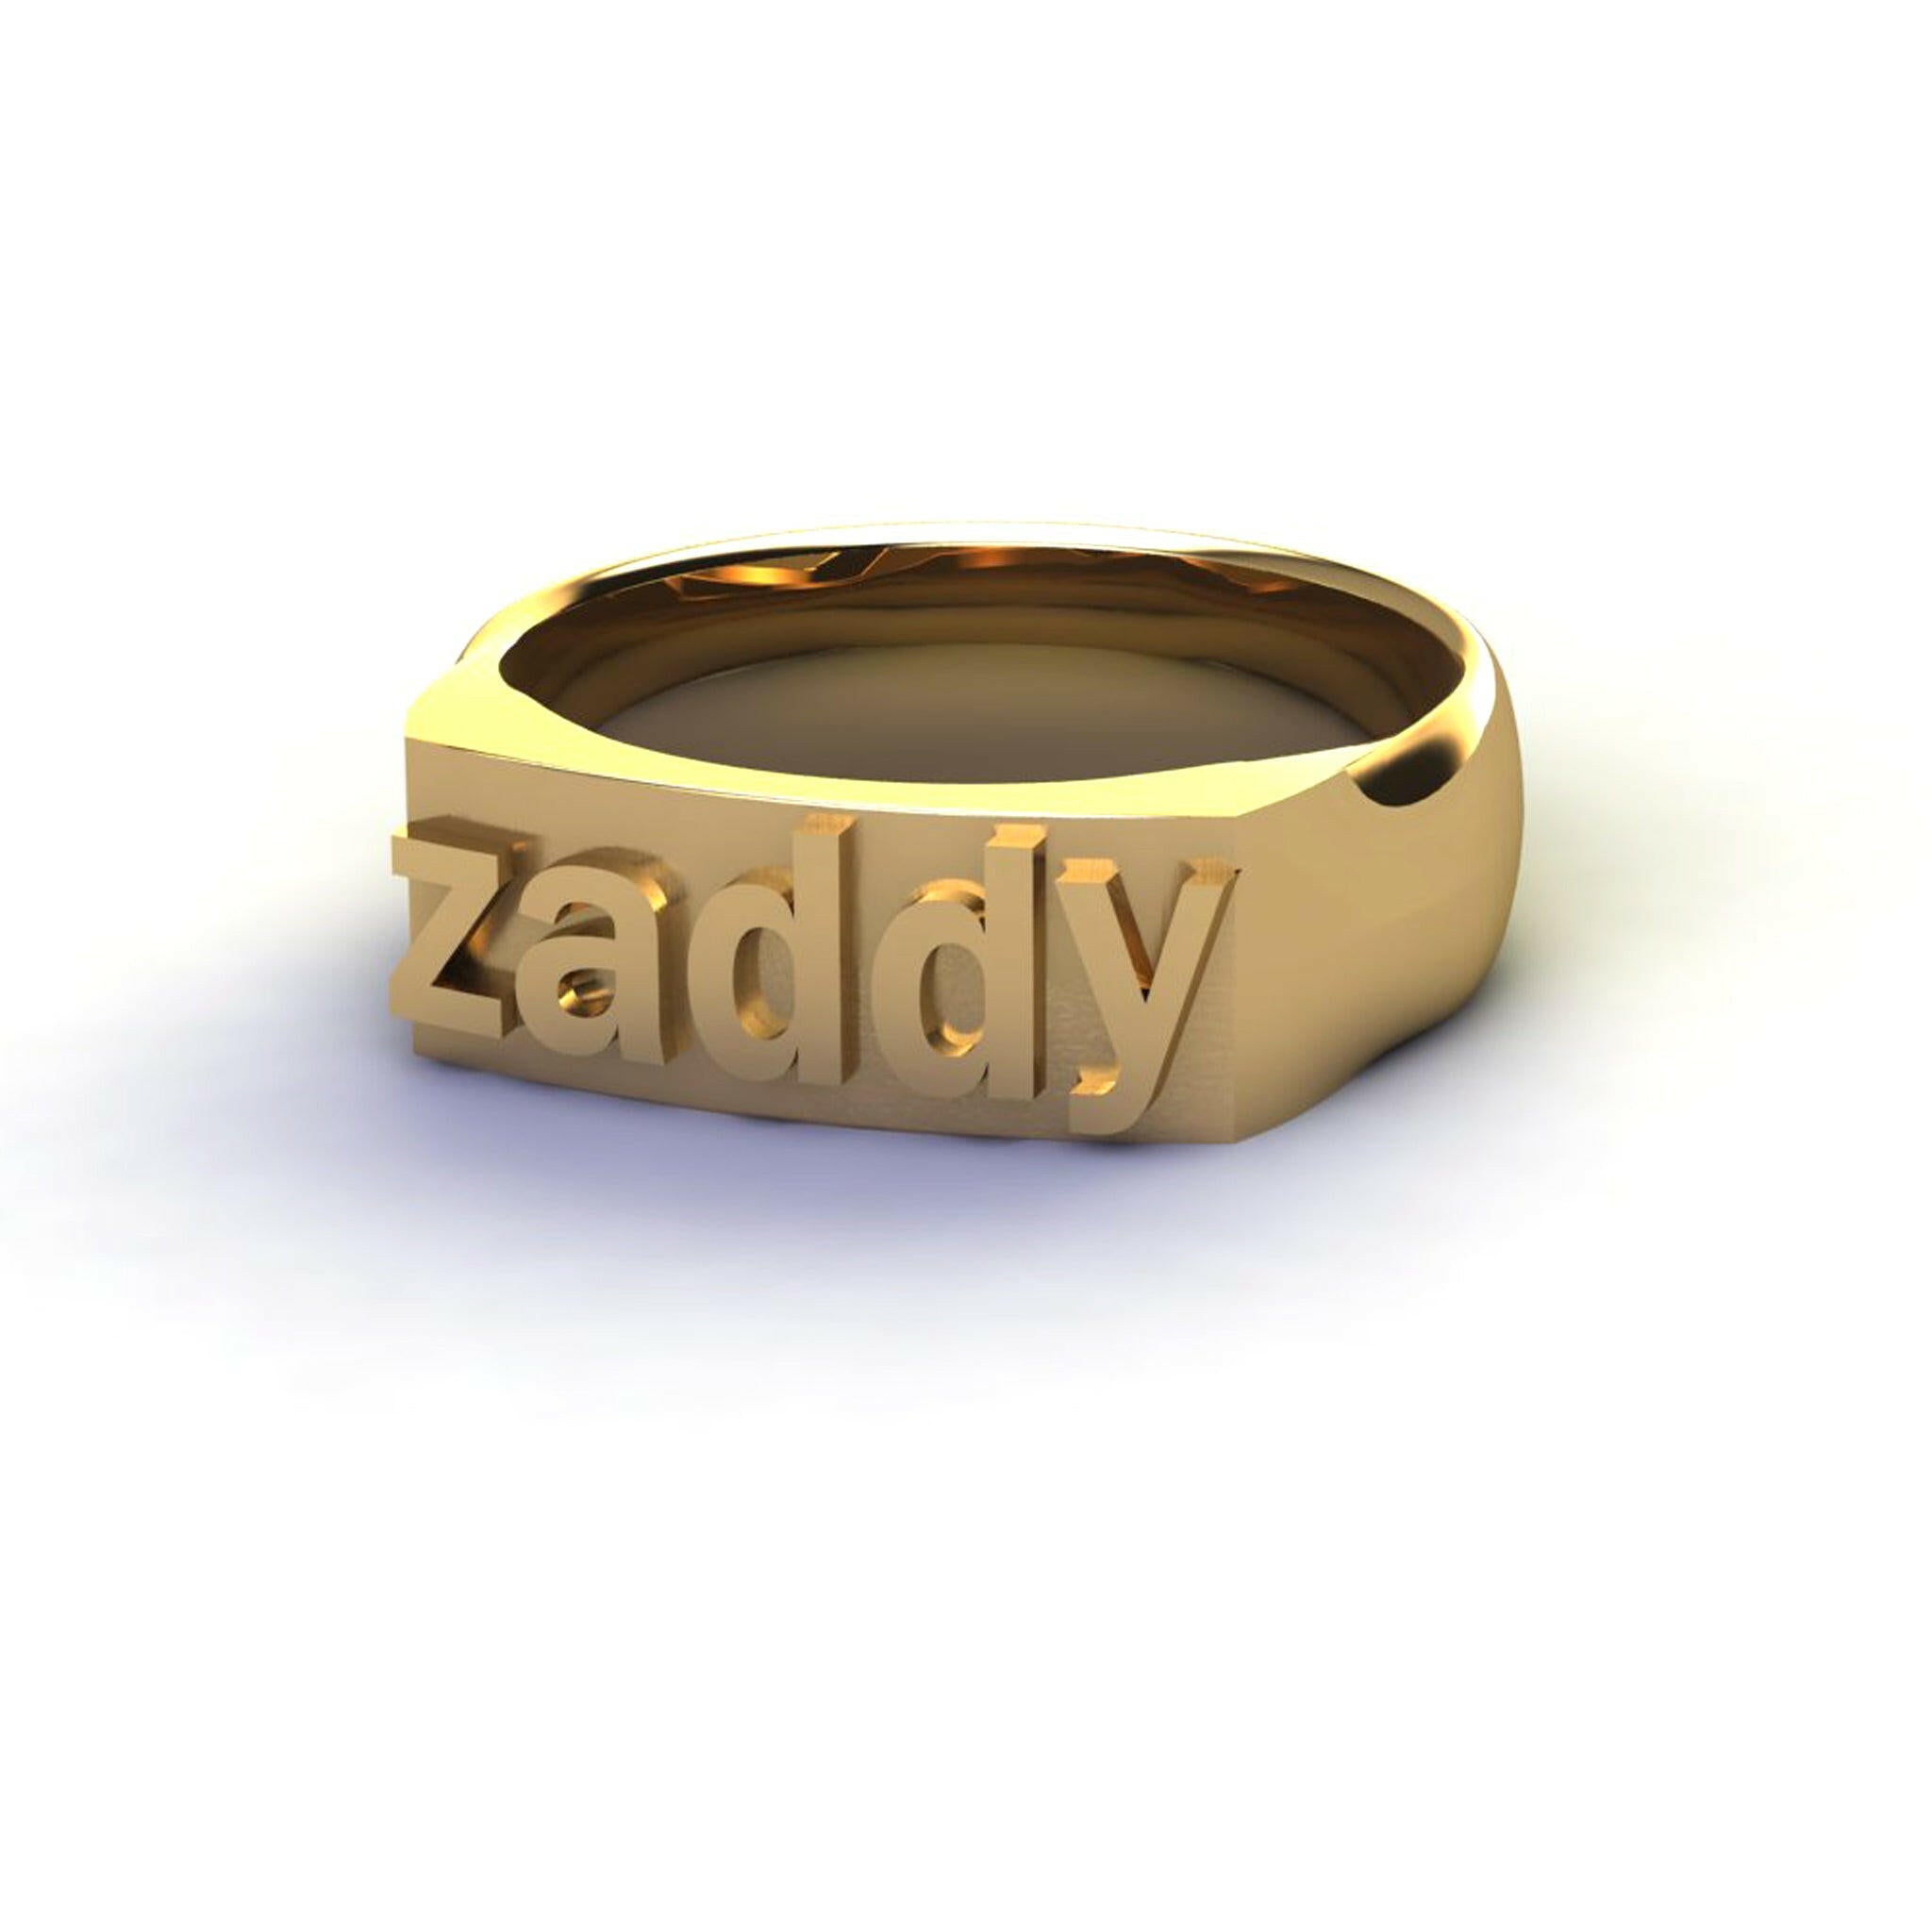 zaddy - Ilah Cibis Jewelry-Rings